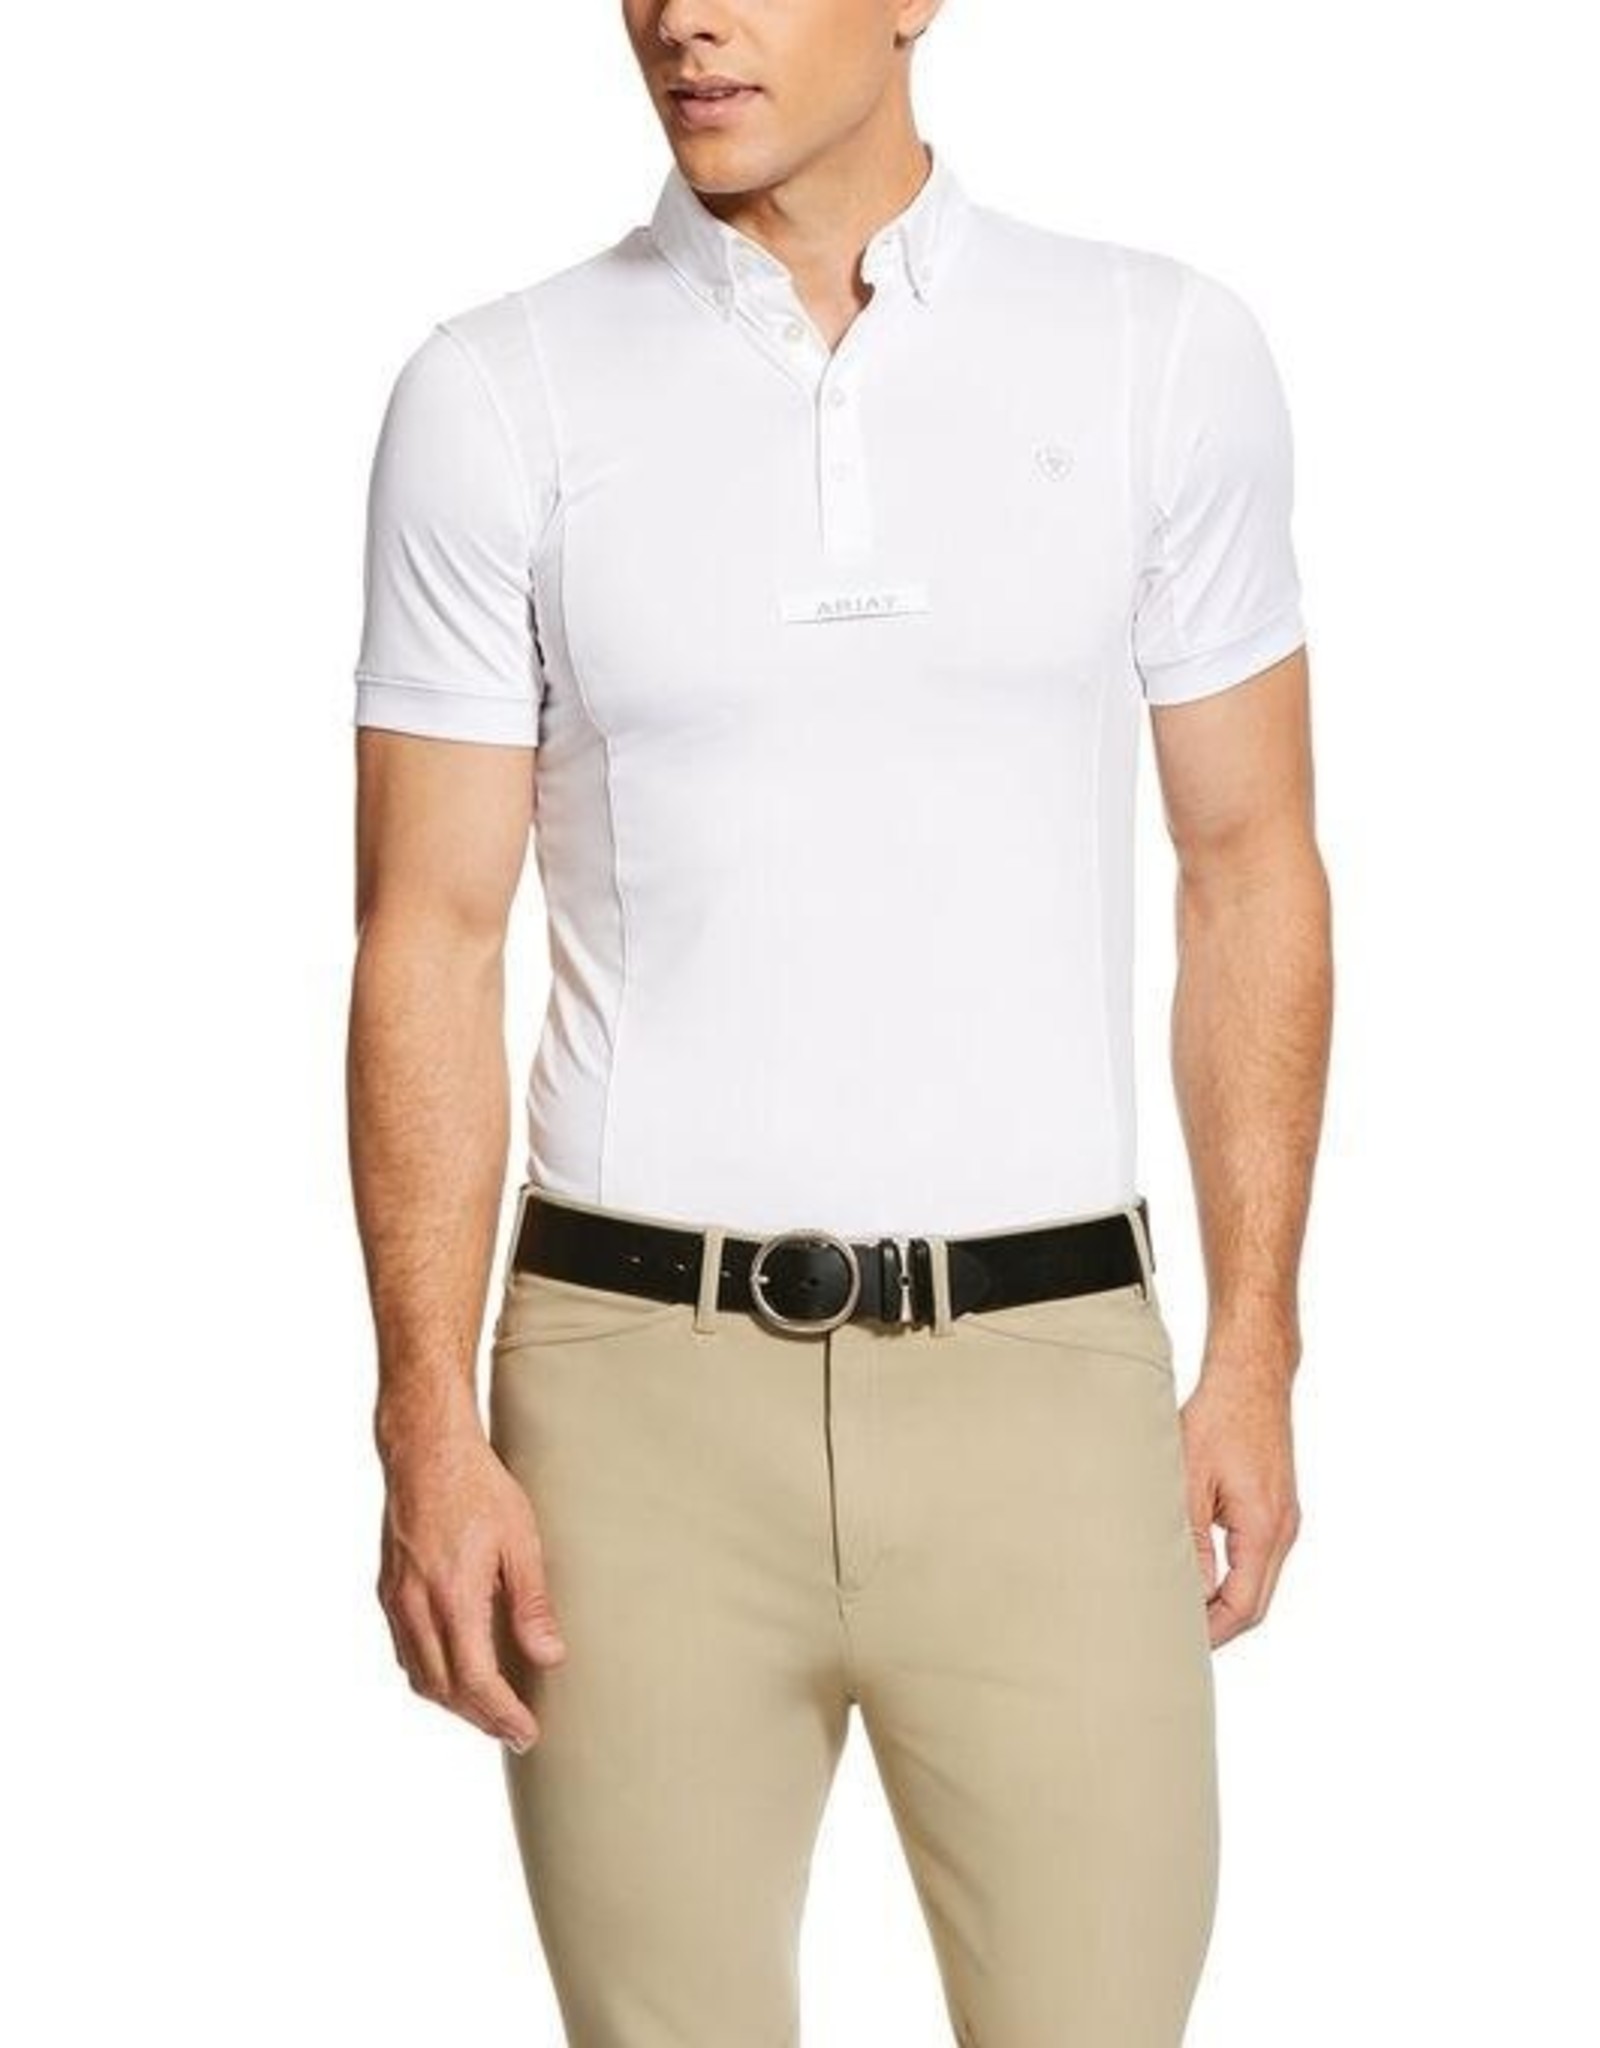 Ariat Tek Short-Sleeve Polo for Men